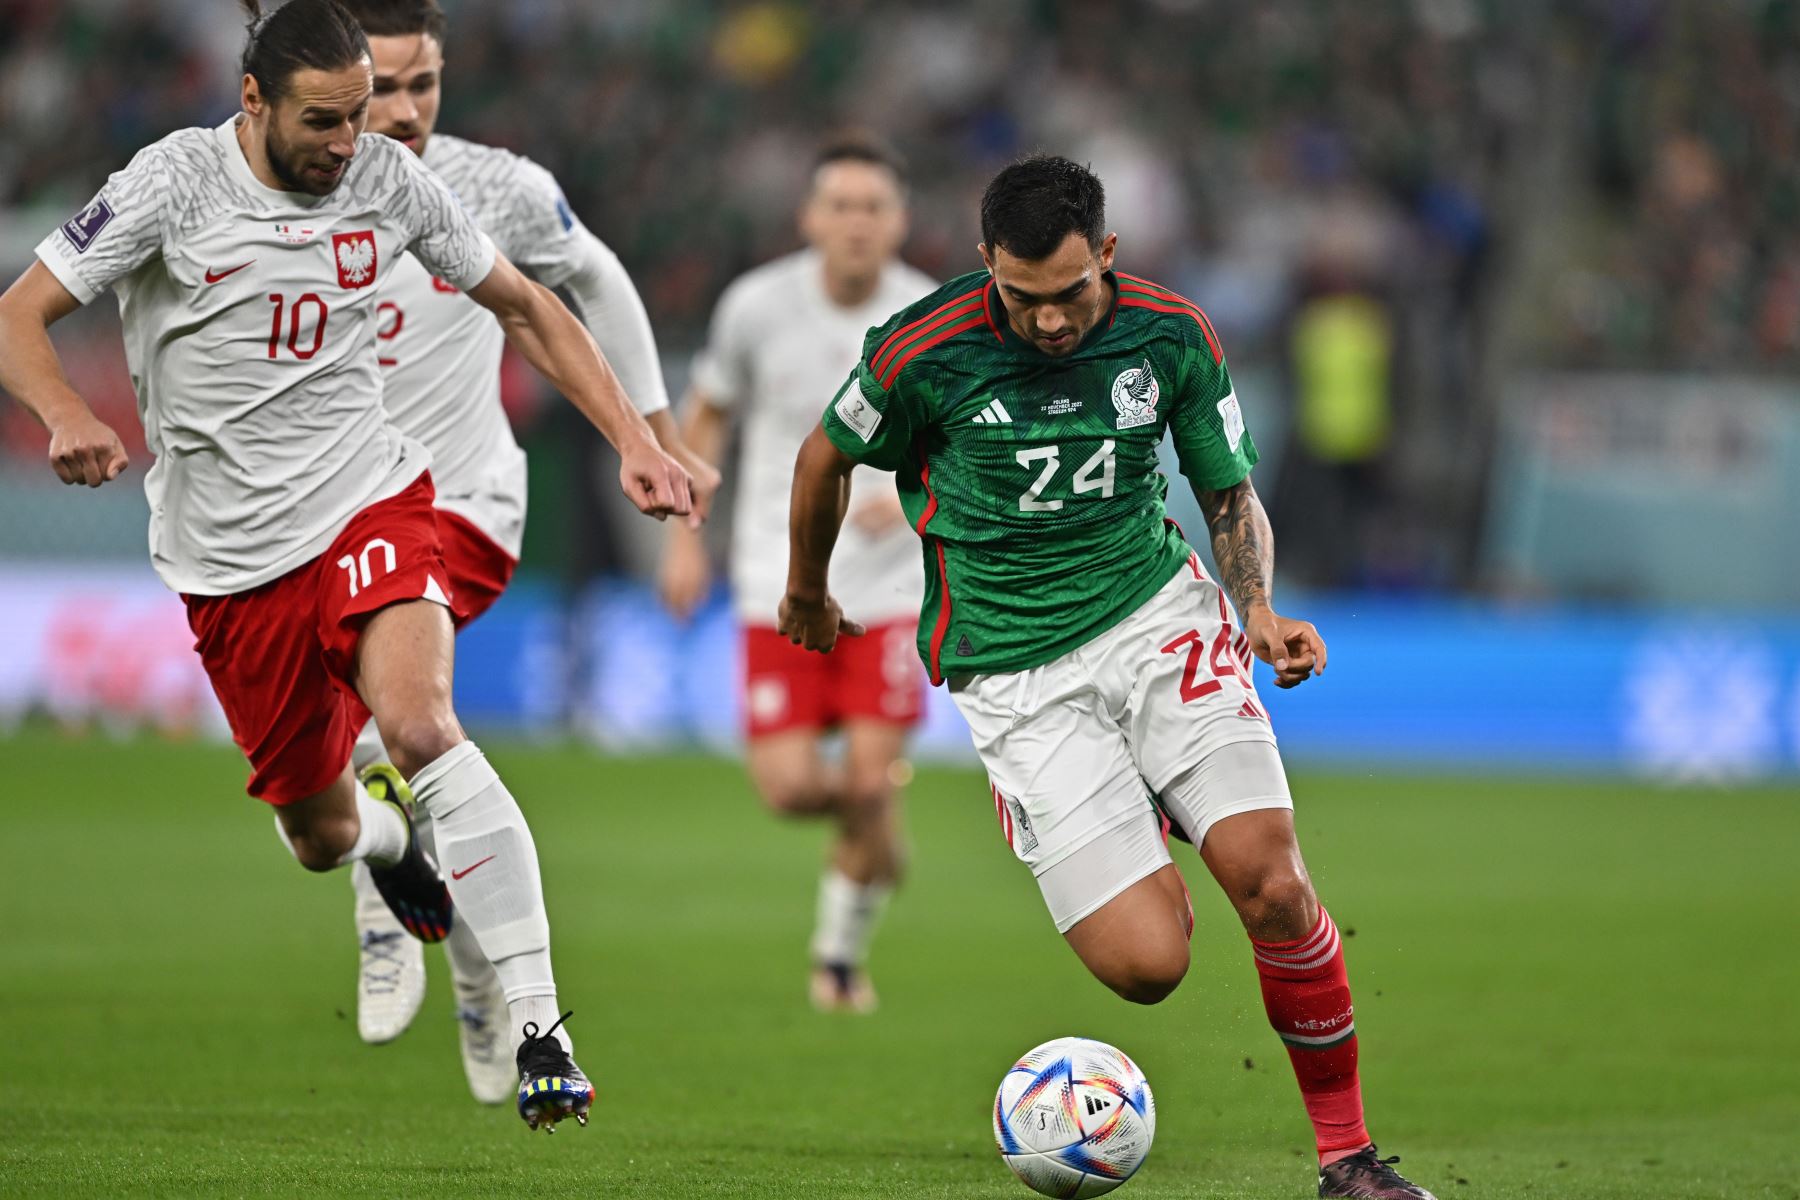 Luis Chávez de México en acción contra Grzegorz Krychowiak de Polonia durante el partido de fútbol del grupo C de la Copa Mundial de la FIFA 2022 entre México y Polonia en el Estadio 947 en Doha, Catar, el 22 de noviembre 2022.